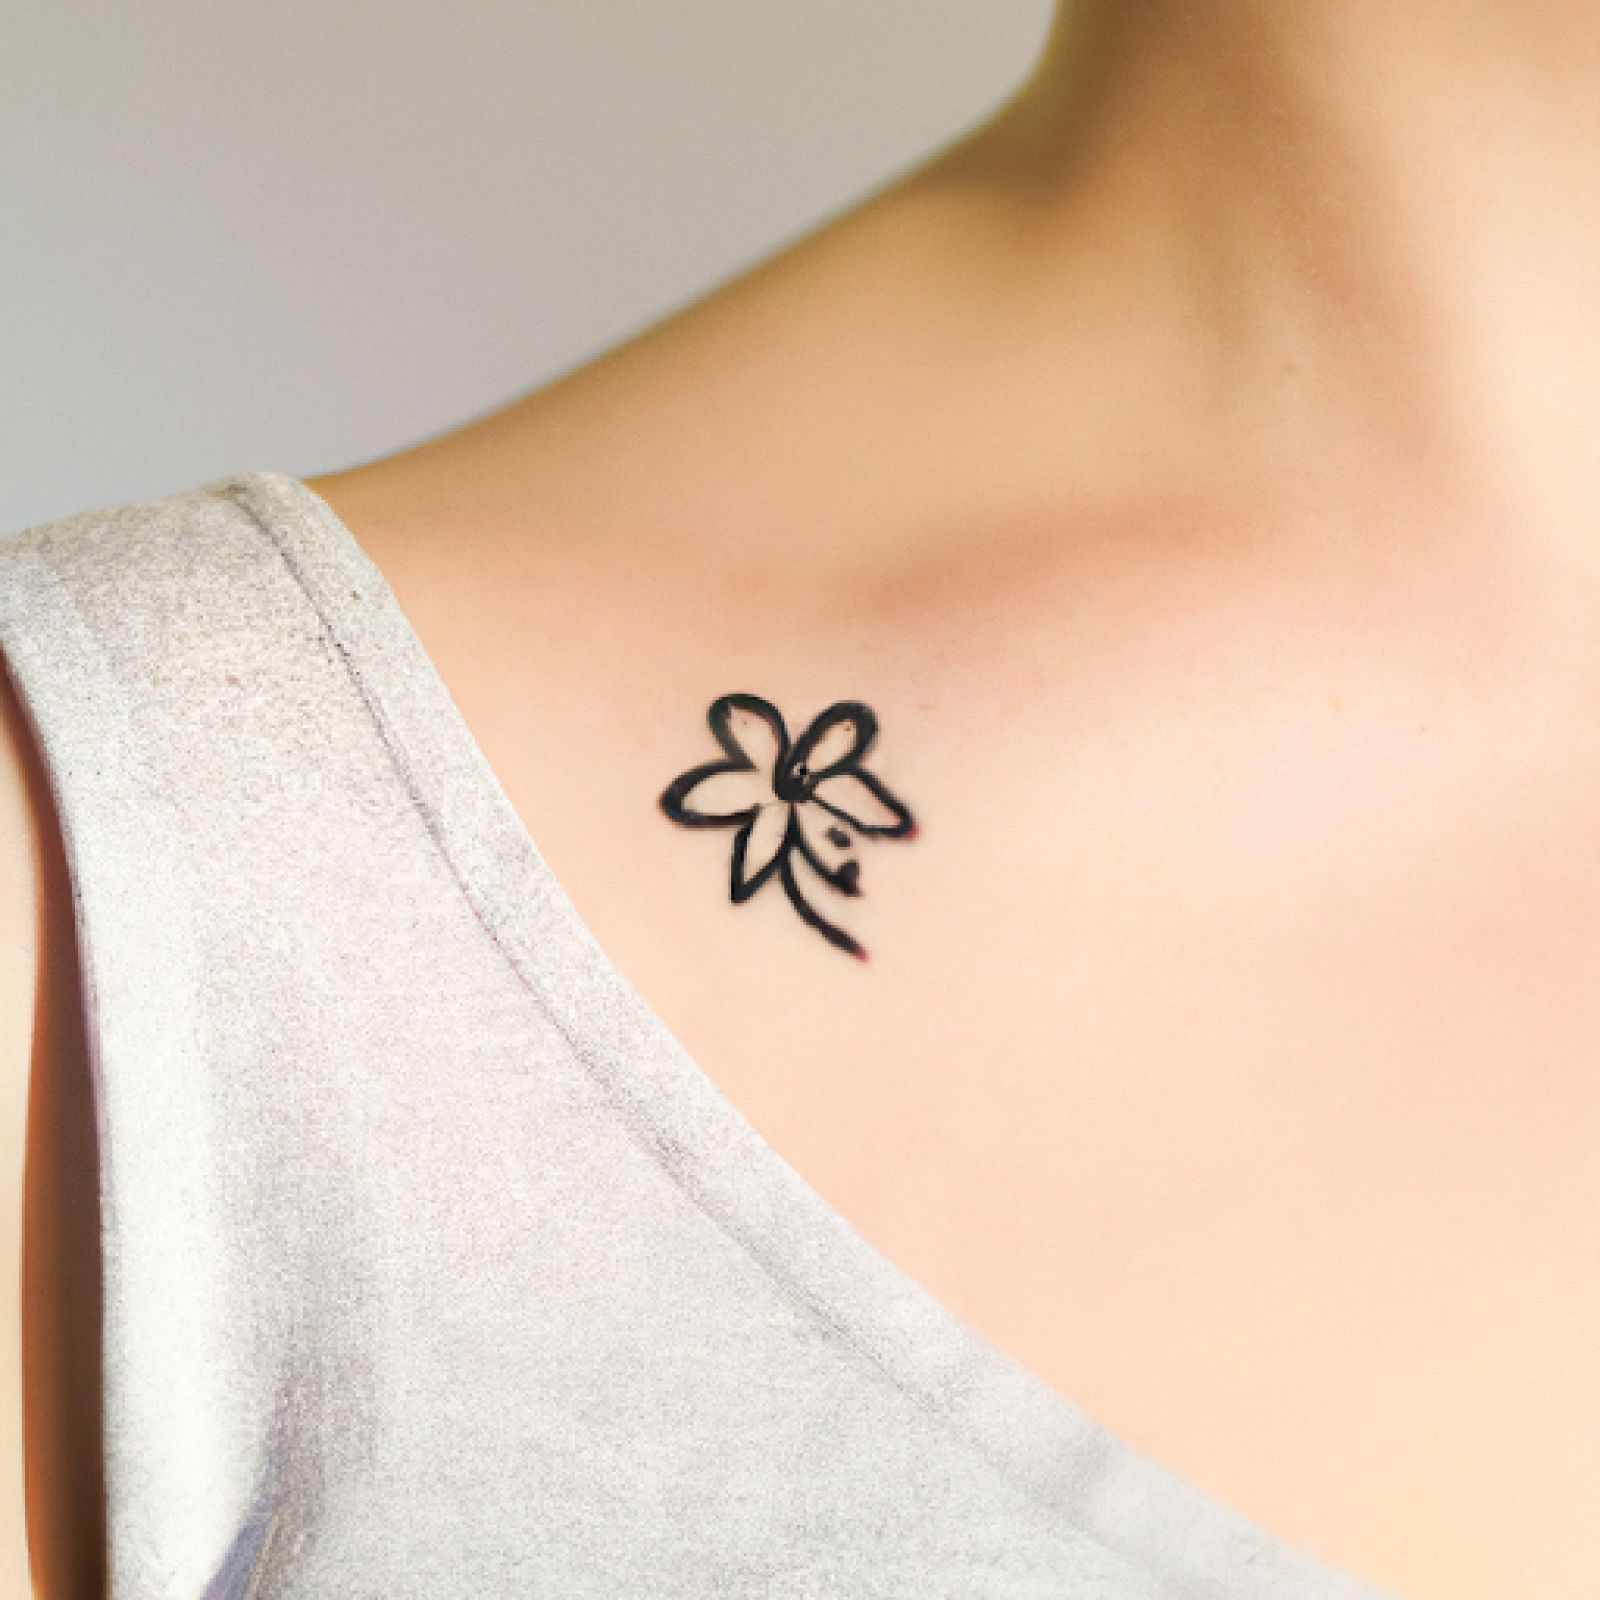 Flower tattoo on chest for women